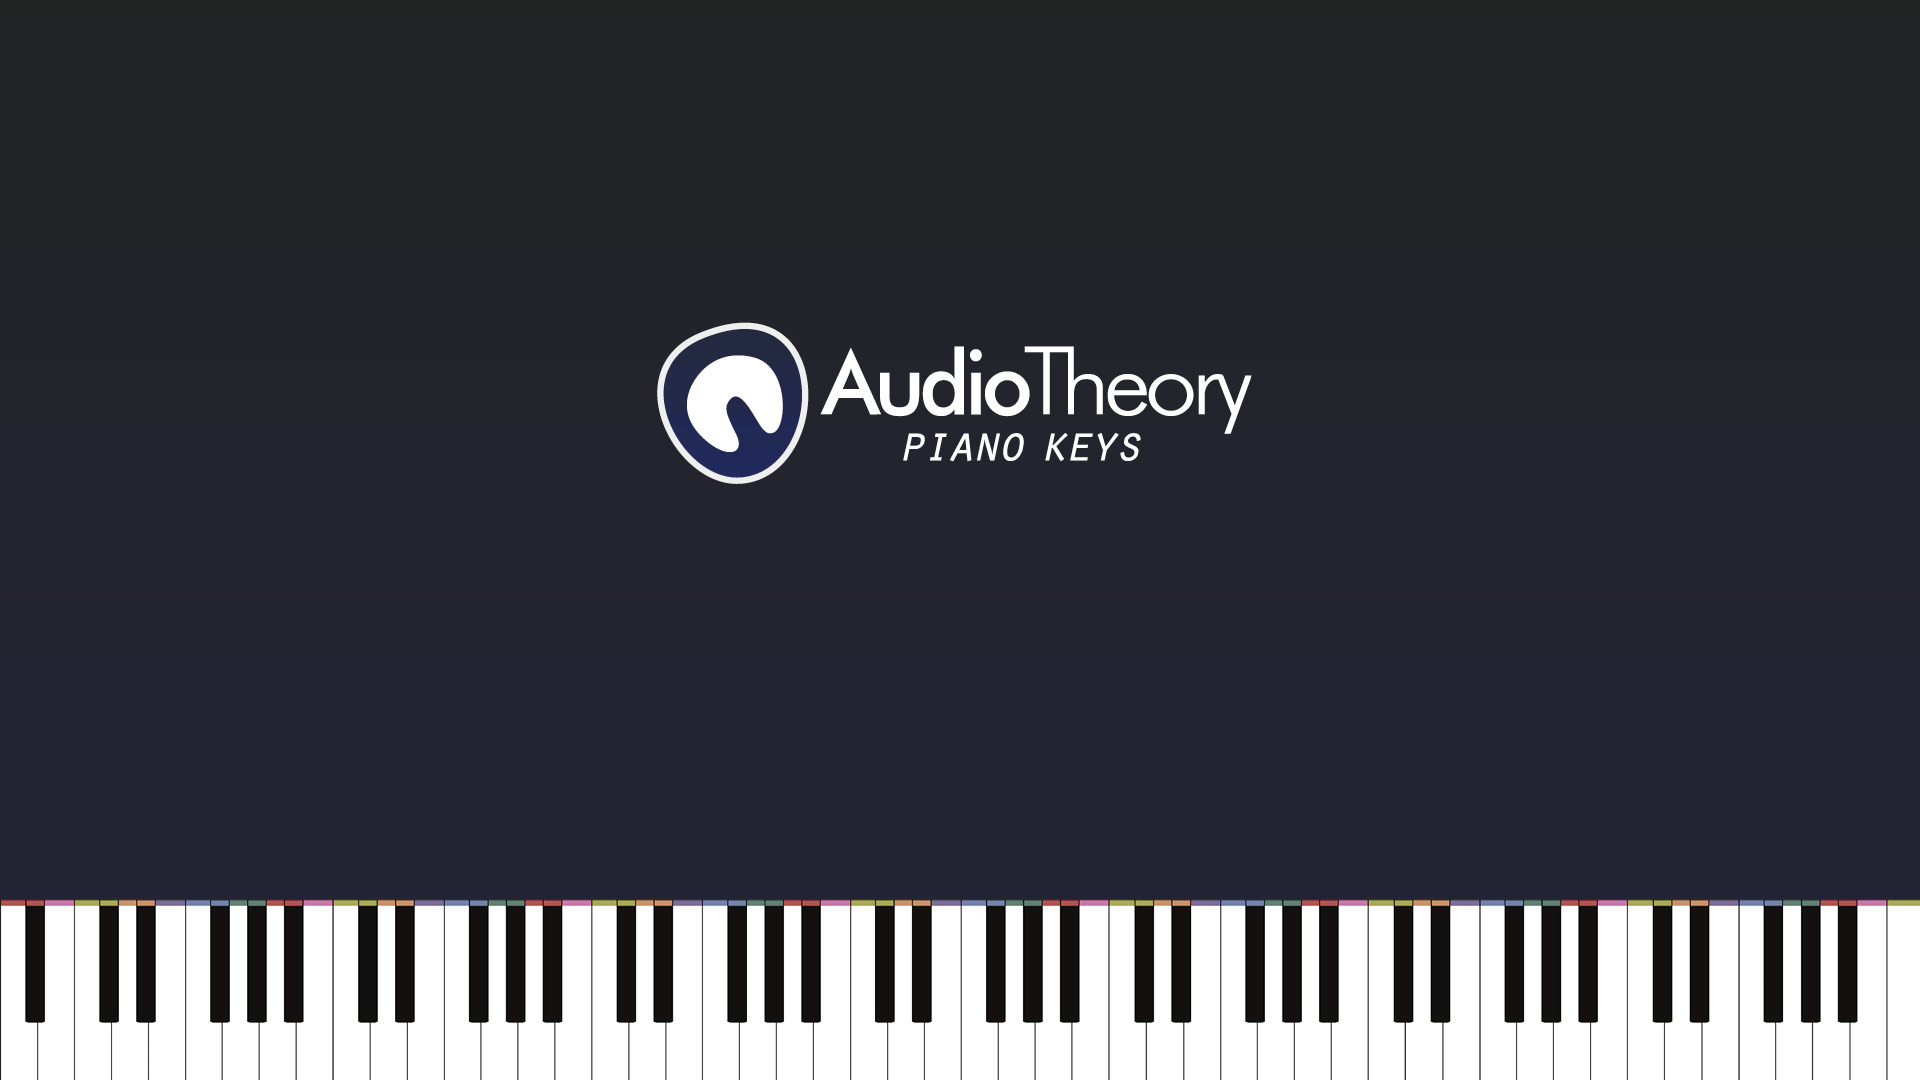 AudioTheory Piano Keys 88 keys title